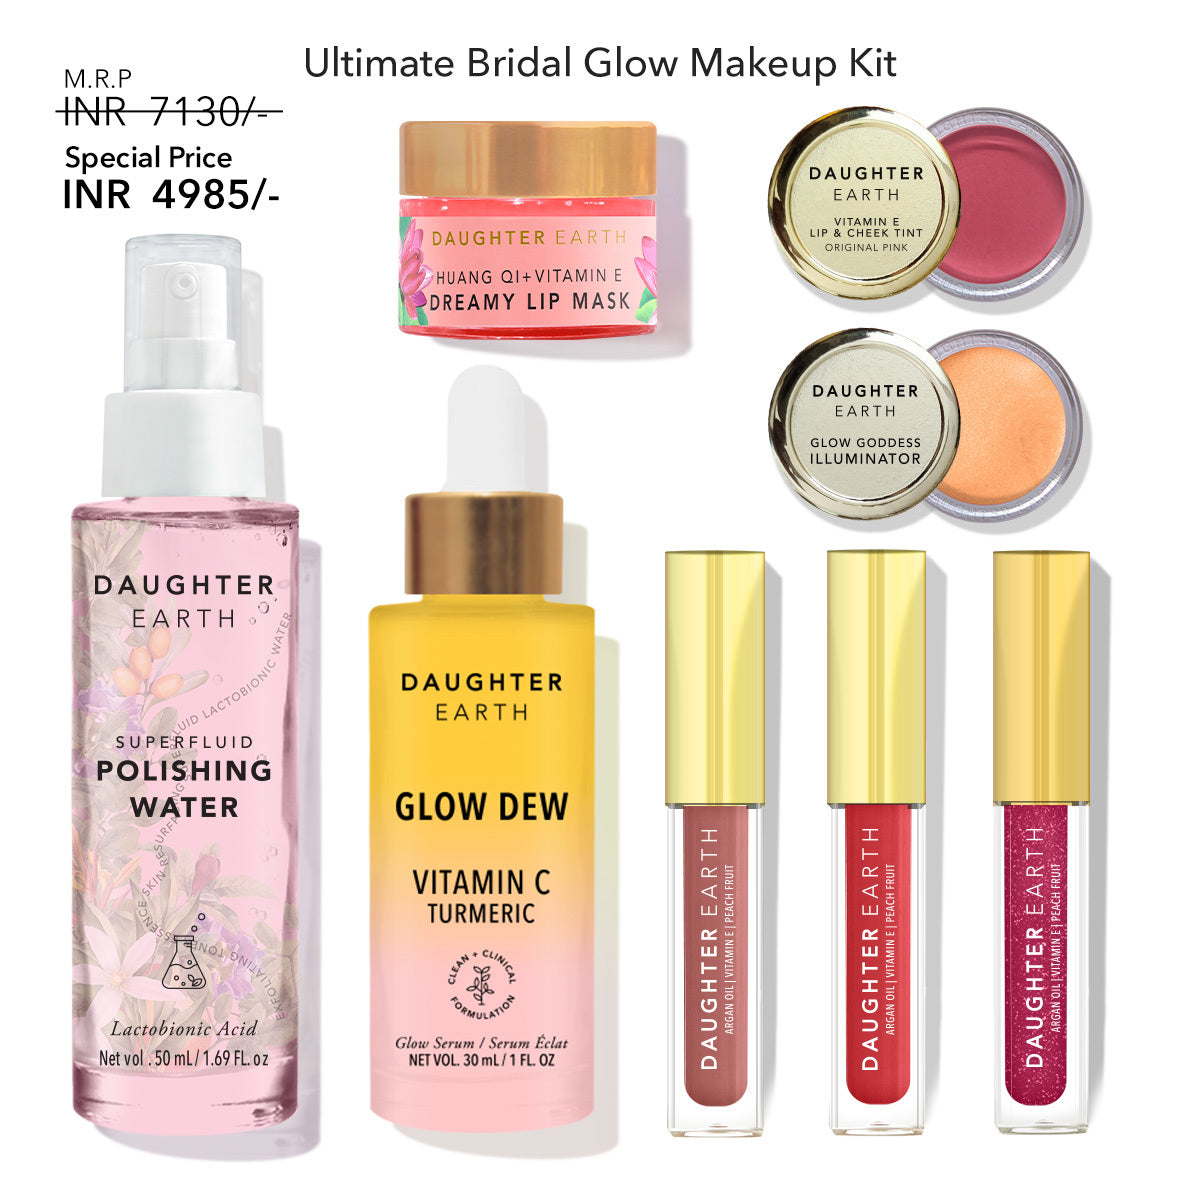 Ultimate Bridal Glow Makeup Kit – Daughter Earth